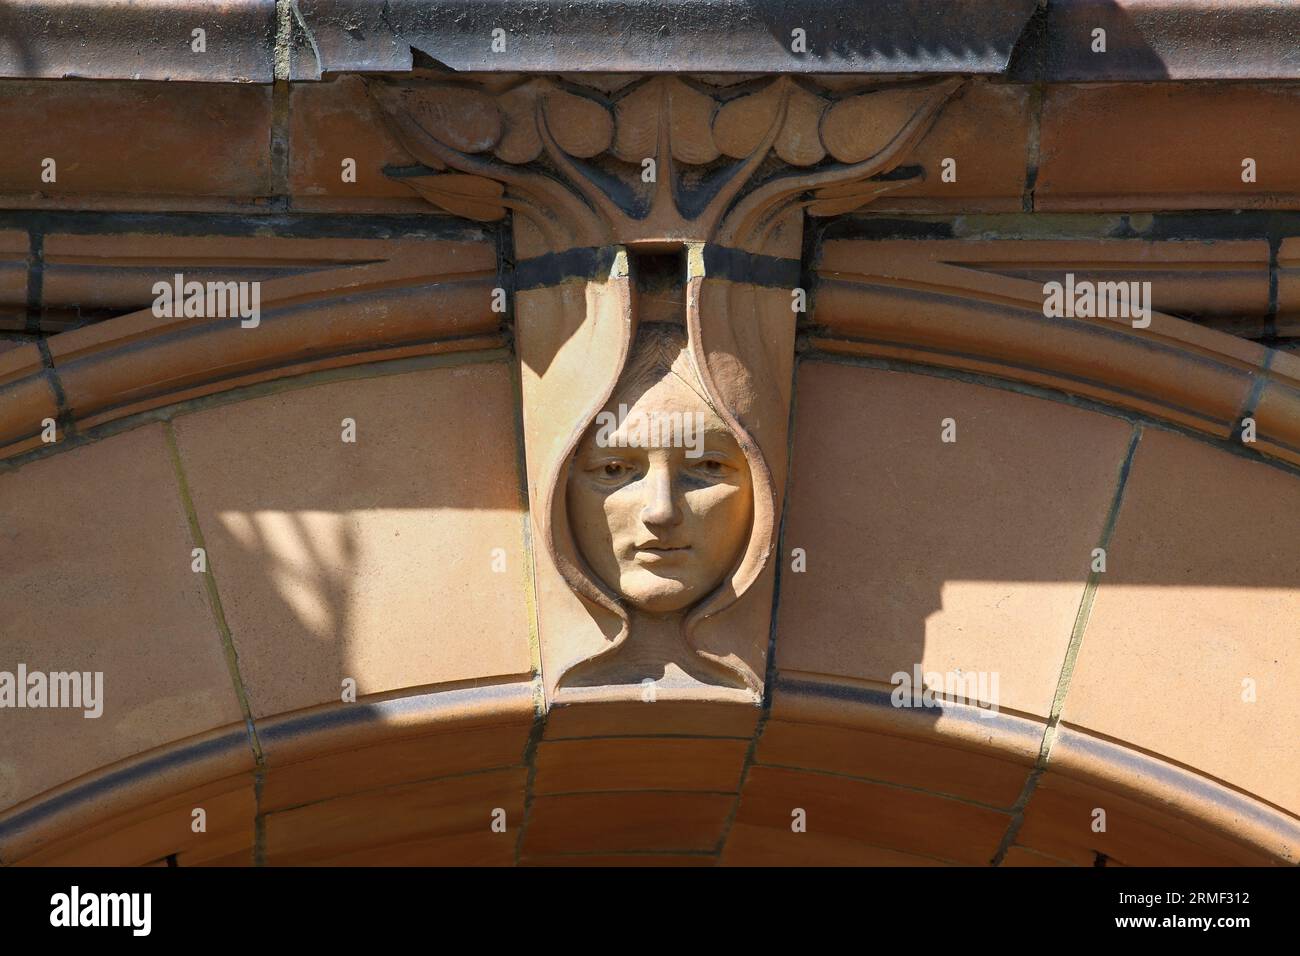 Primo piano della facciata del grande Ippodromo di Yarmouth che mostra una chiave di volta ad arco a forma di testa art nouveau incorniciata da foglie. Foto Stock